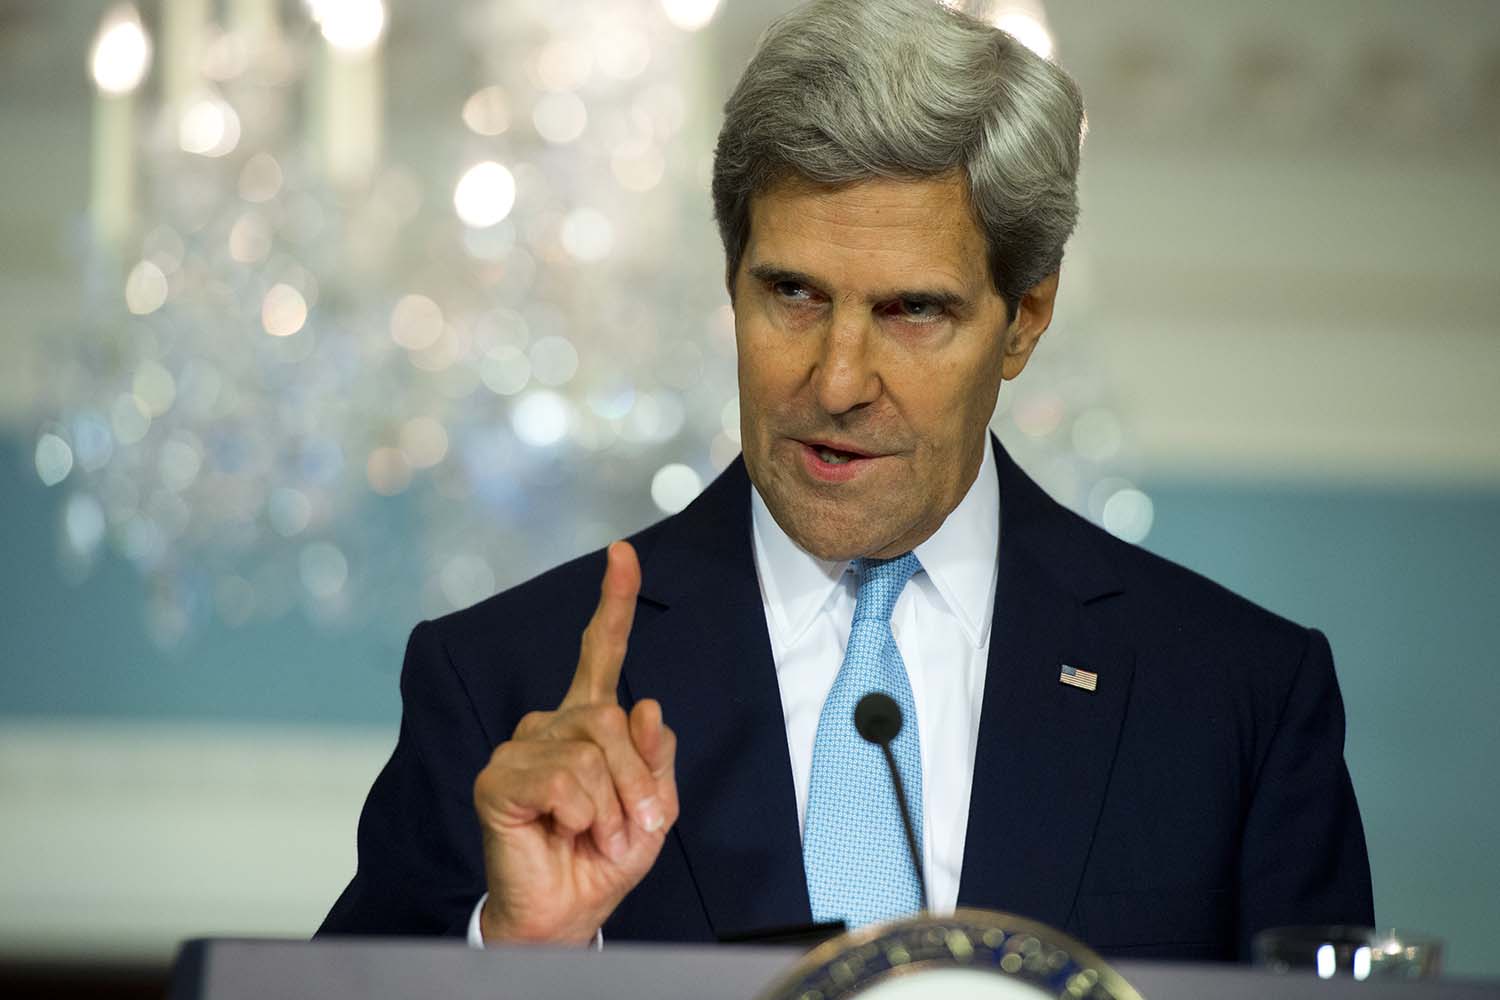 John Kerry asegura que las pruebas "independientes" han dado positivo por gas sarín